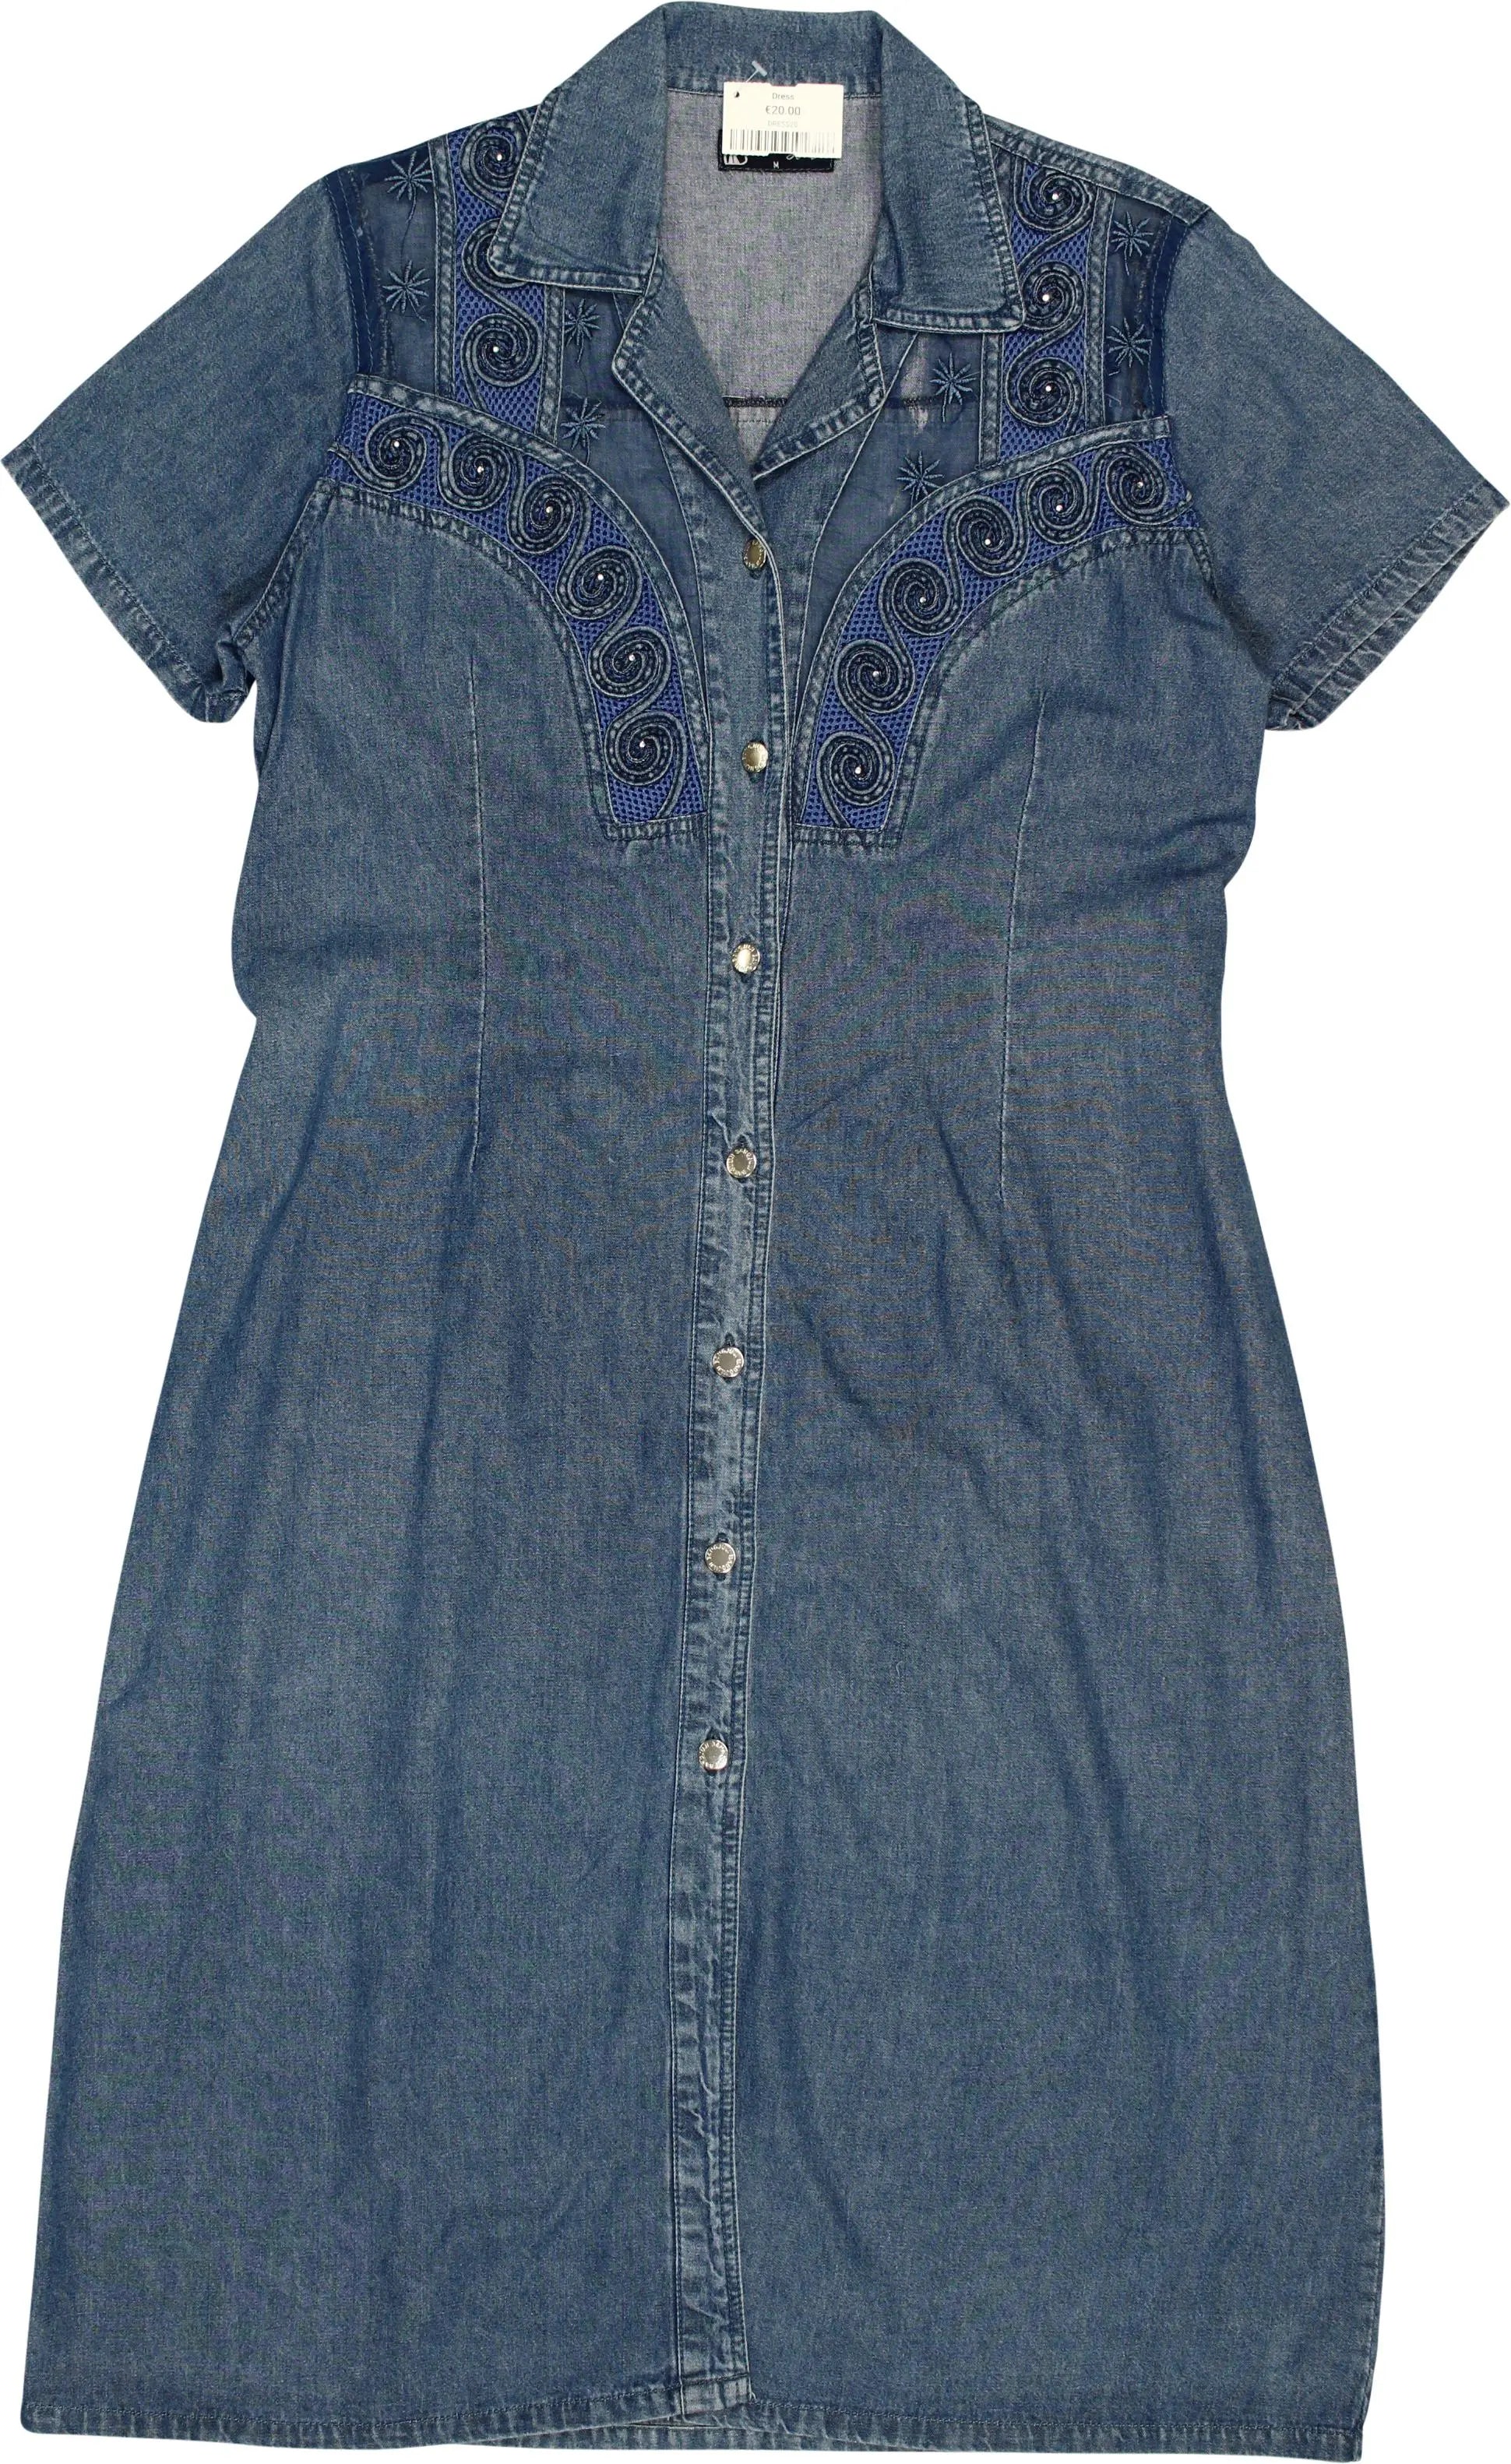 Bangjuji - 90s Denim Dress- ThriftTale.com - Vintage and second handclothing